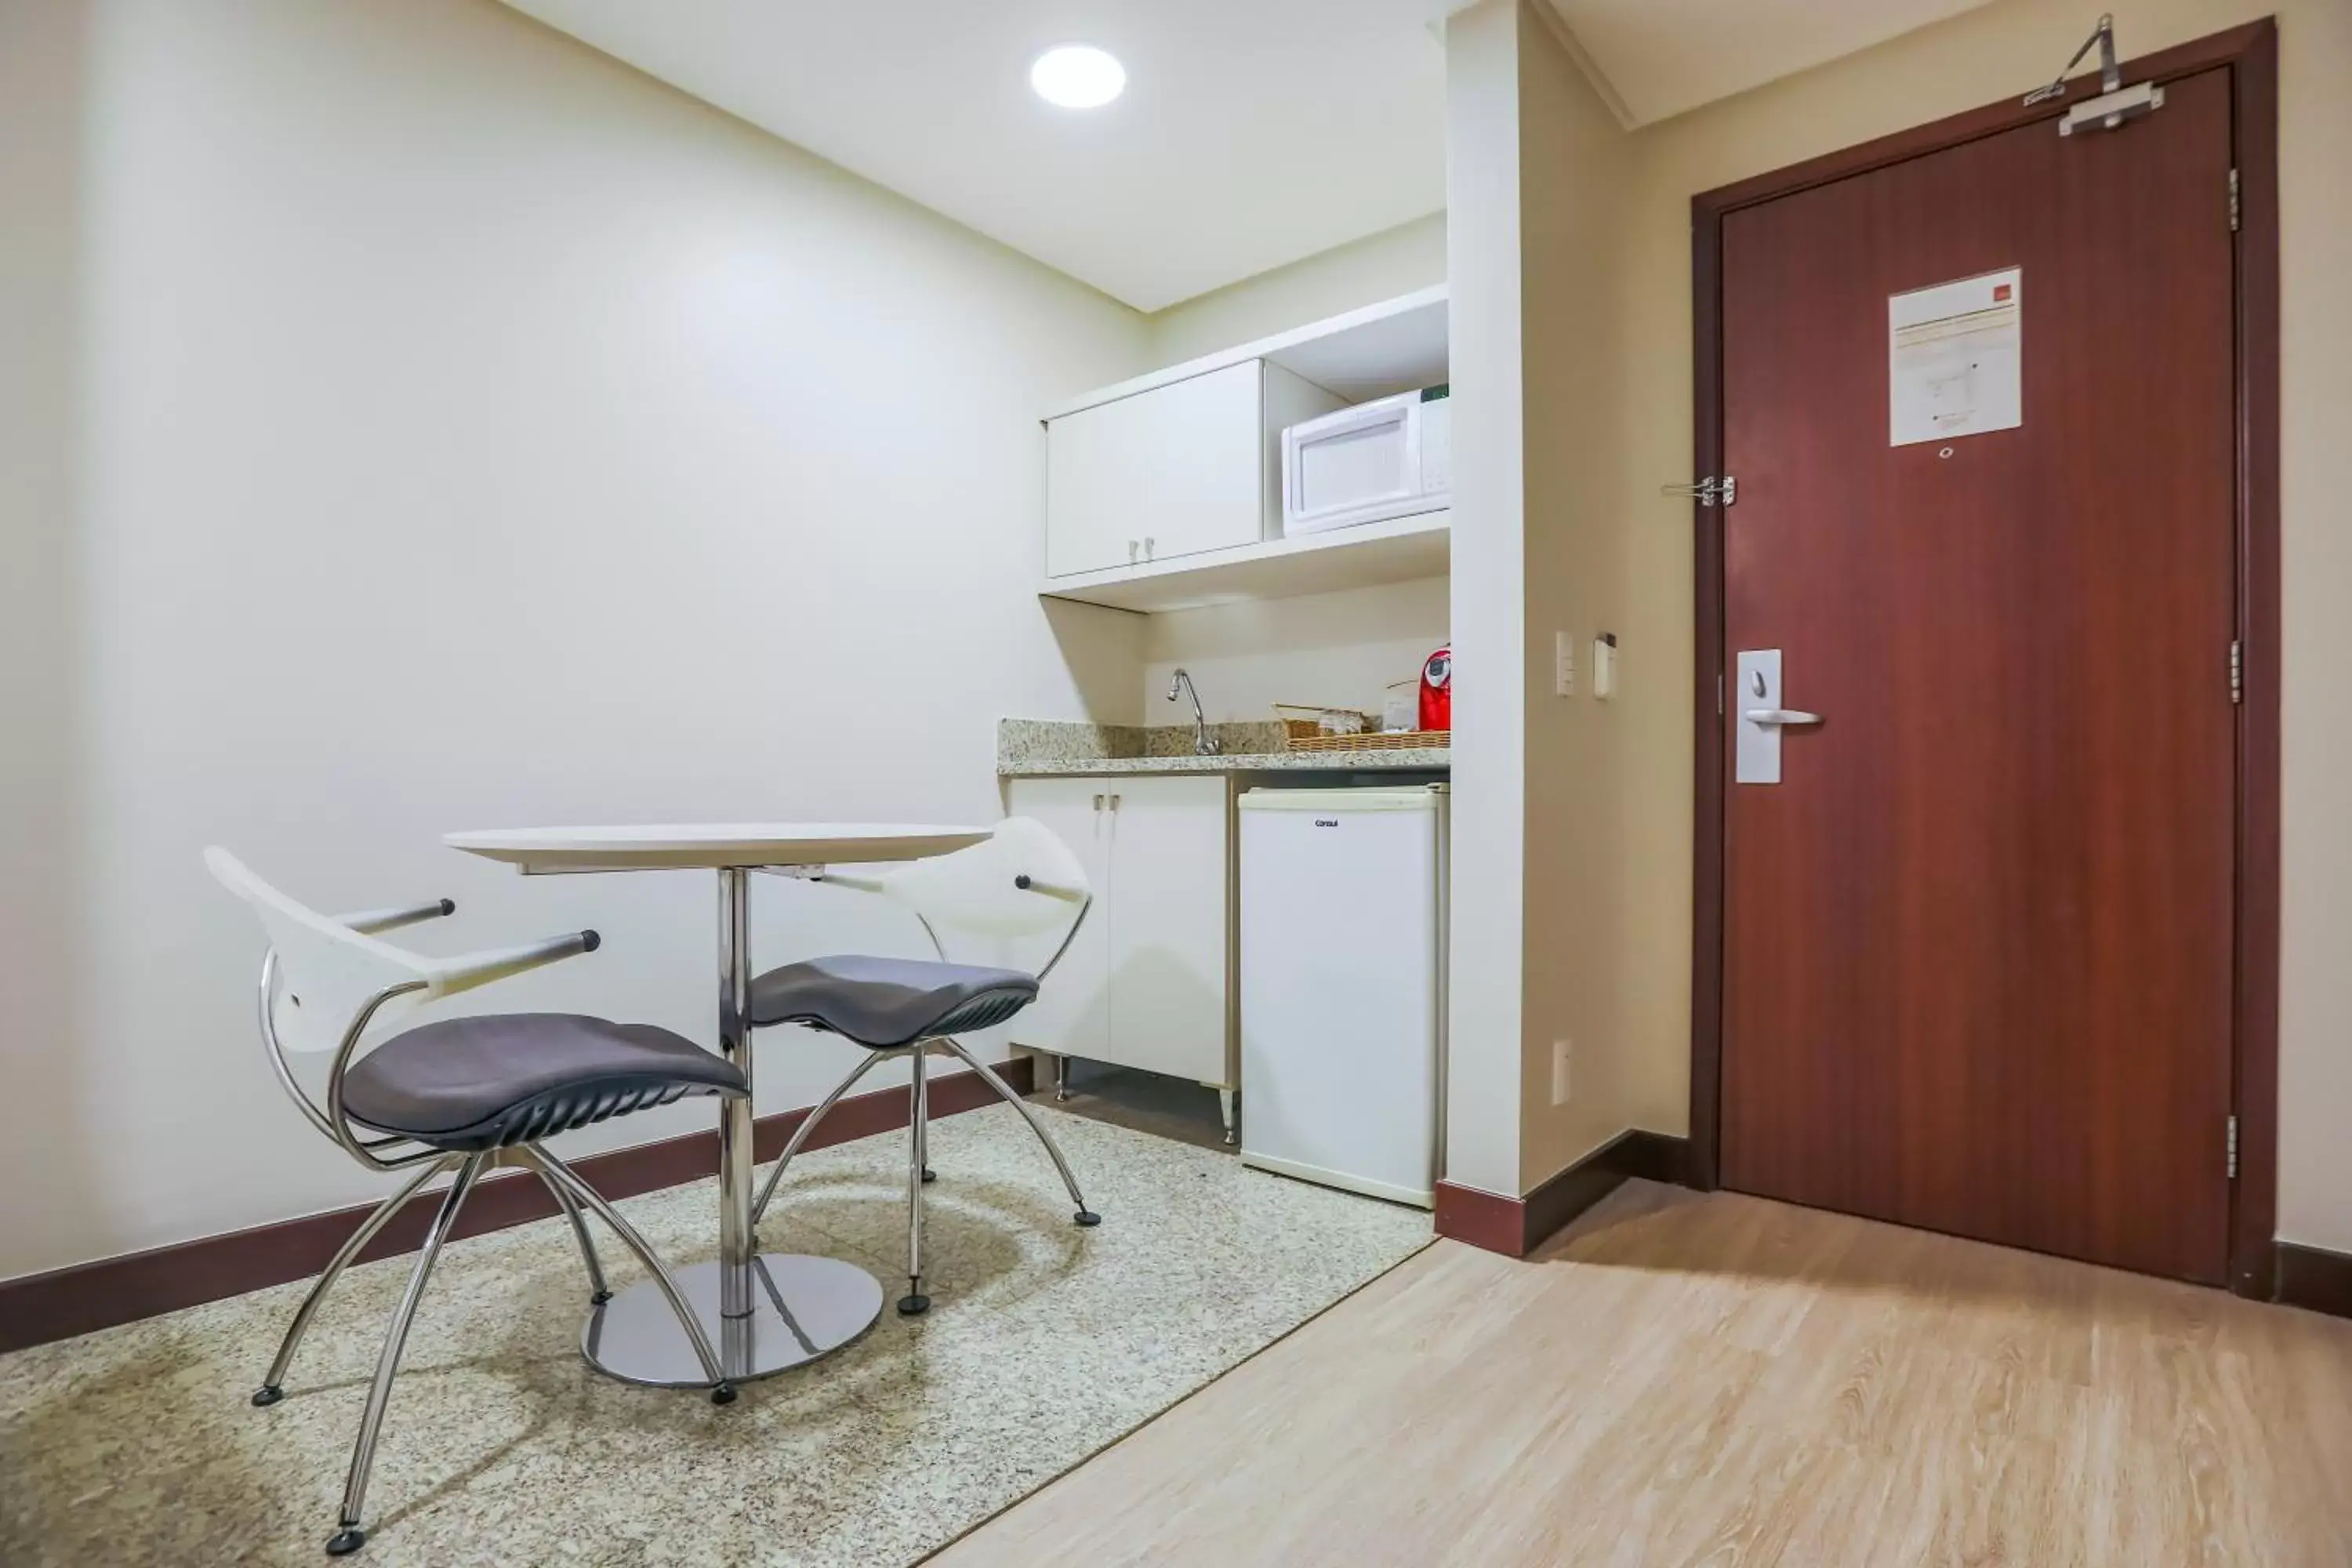 Kitchen or kitchenette, Kitchen/Kitchenette in Comfort Suites Brasília